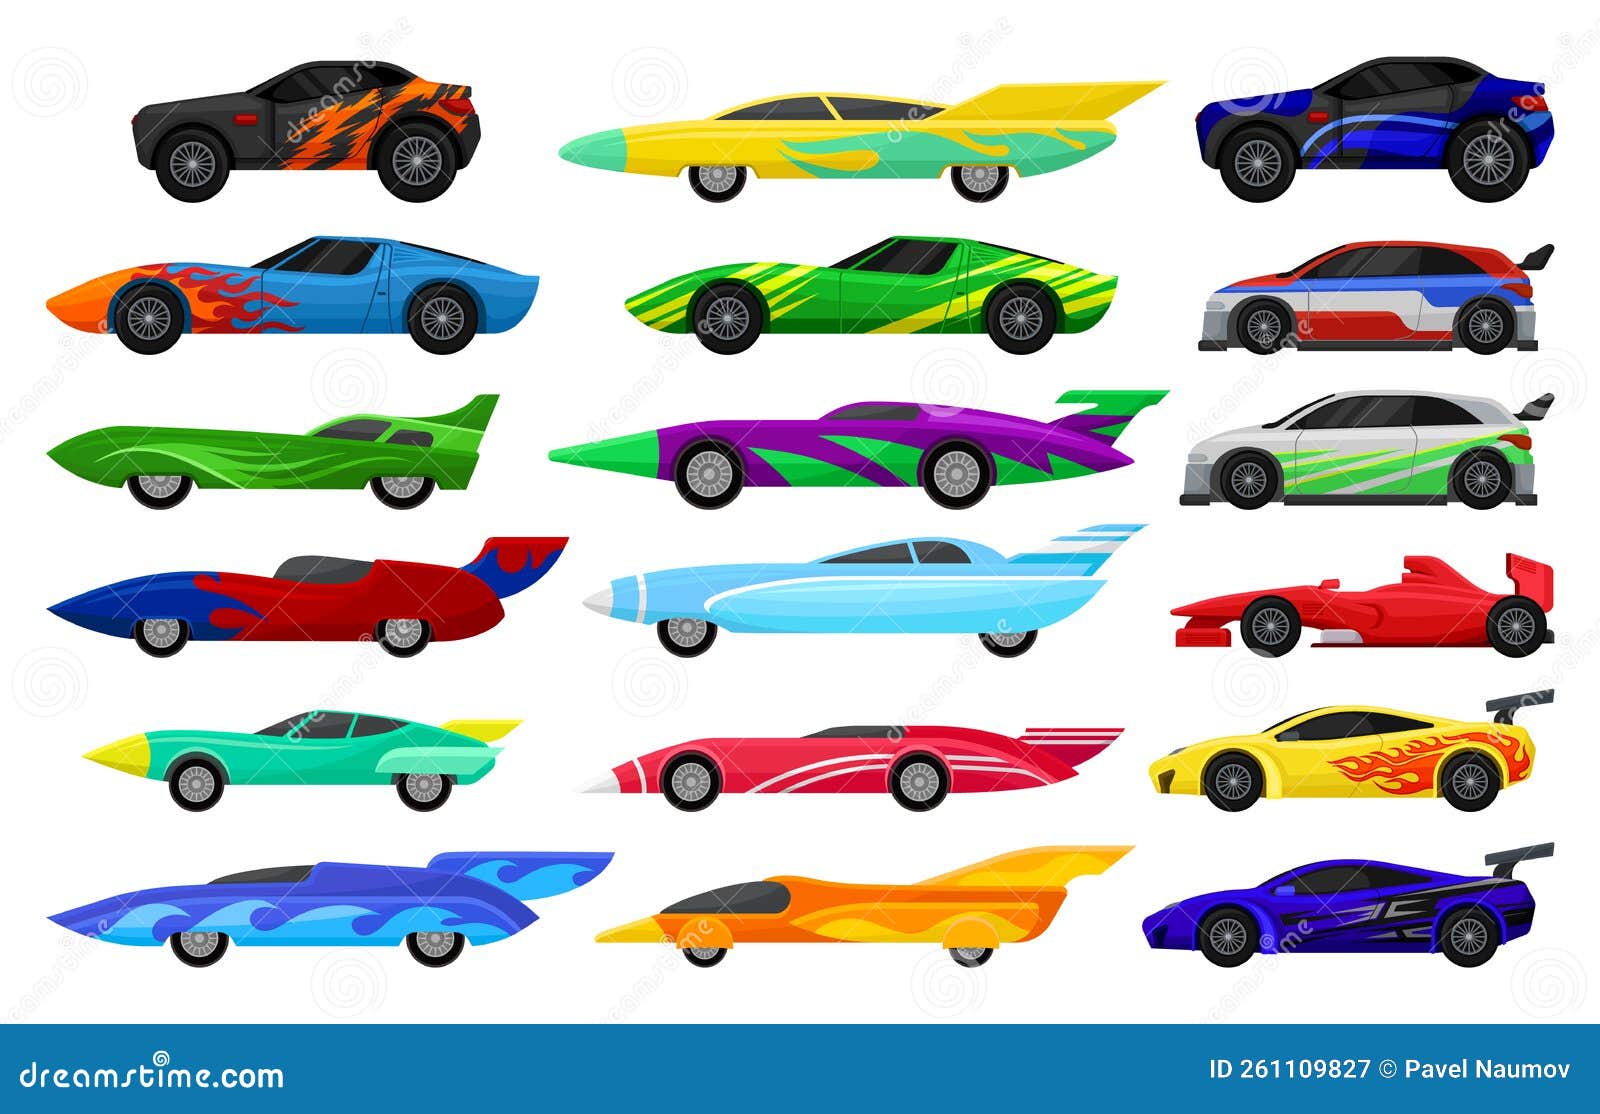 ilustração colorida de clipart de desenho de carro de corrida